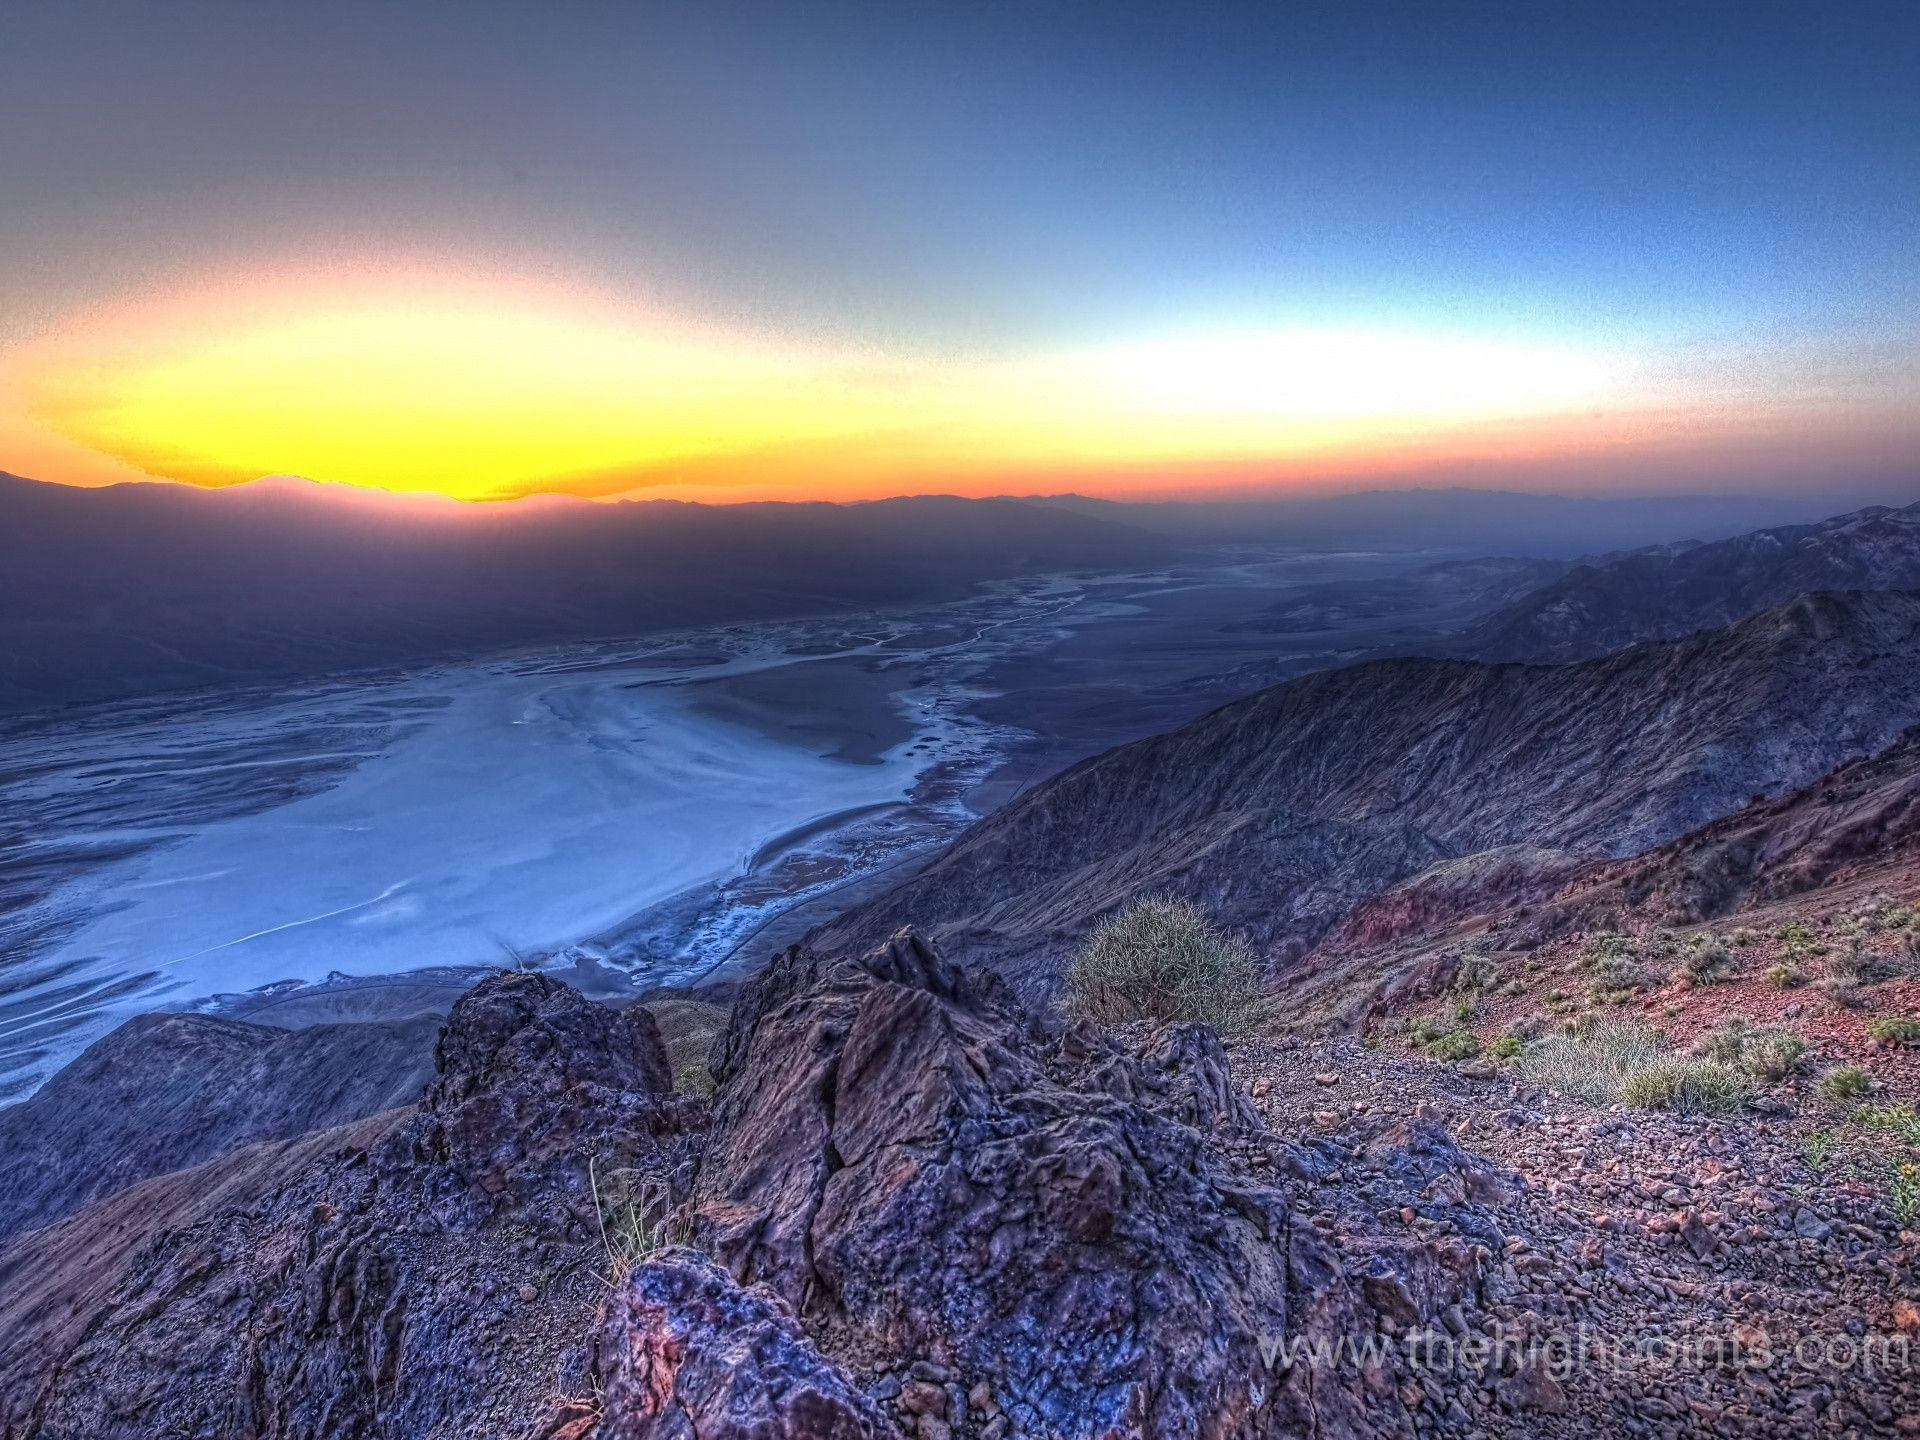 Dantesutsikt I Death Valley. Wallpaper